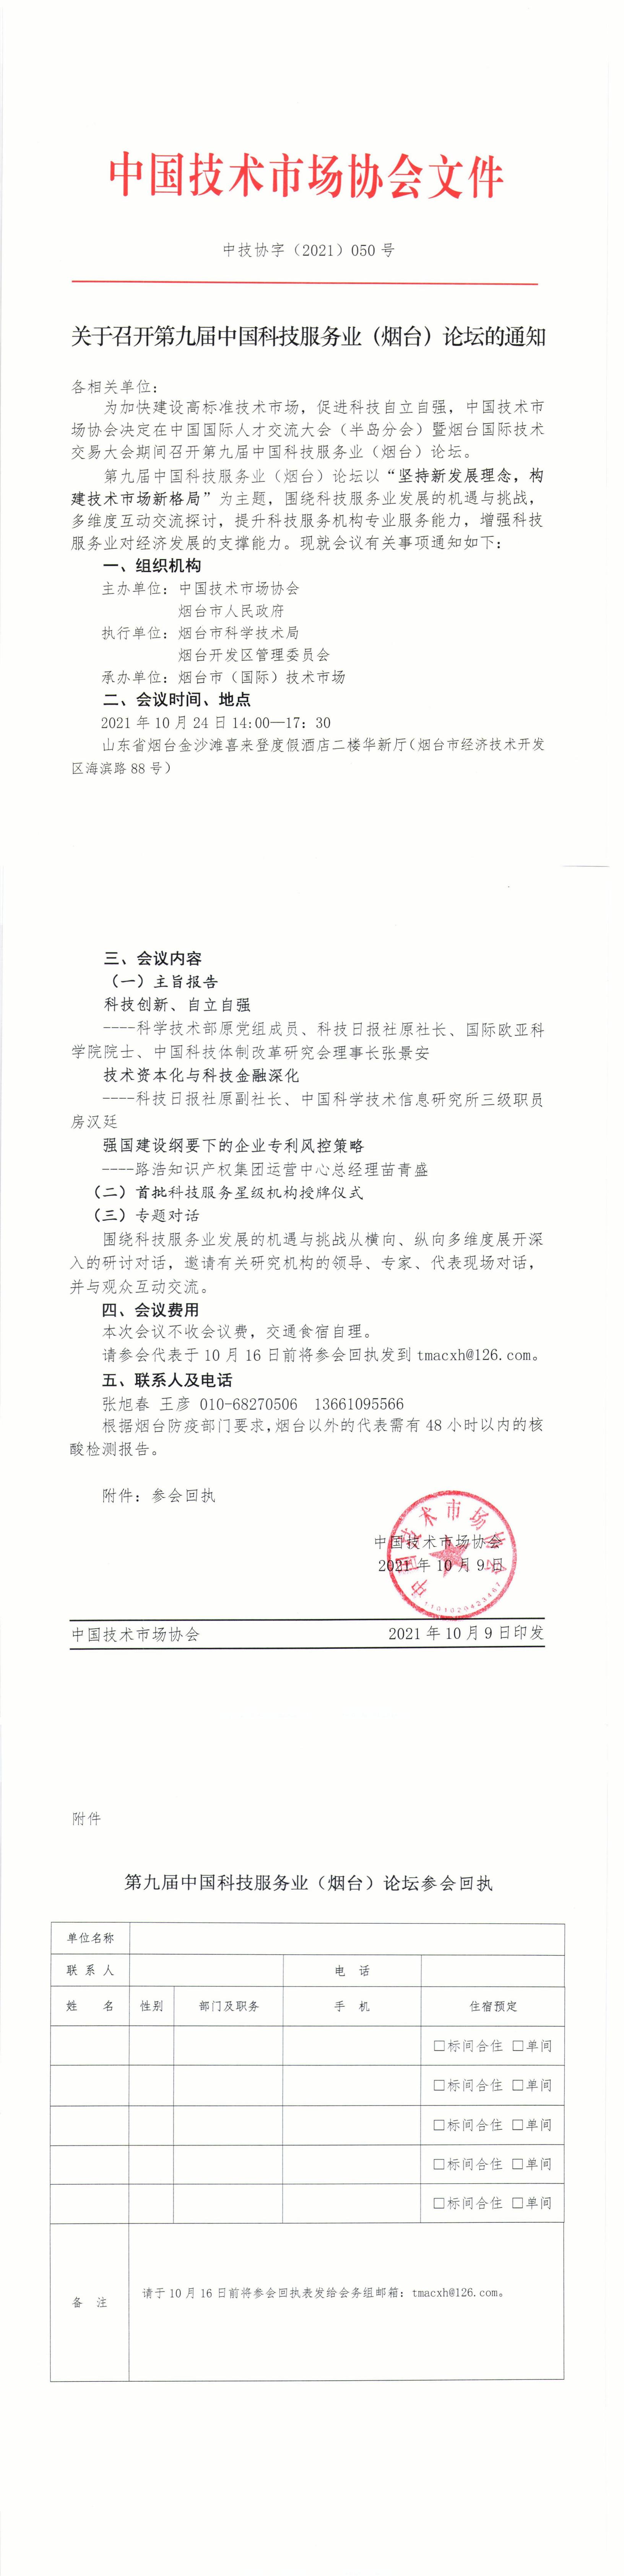 关于召开第九届中国科技服务业（烟台）论坛的通知(1)_00(1).jpg